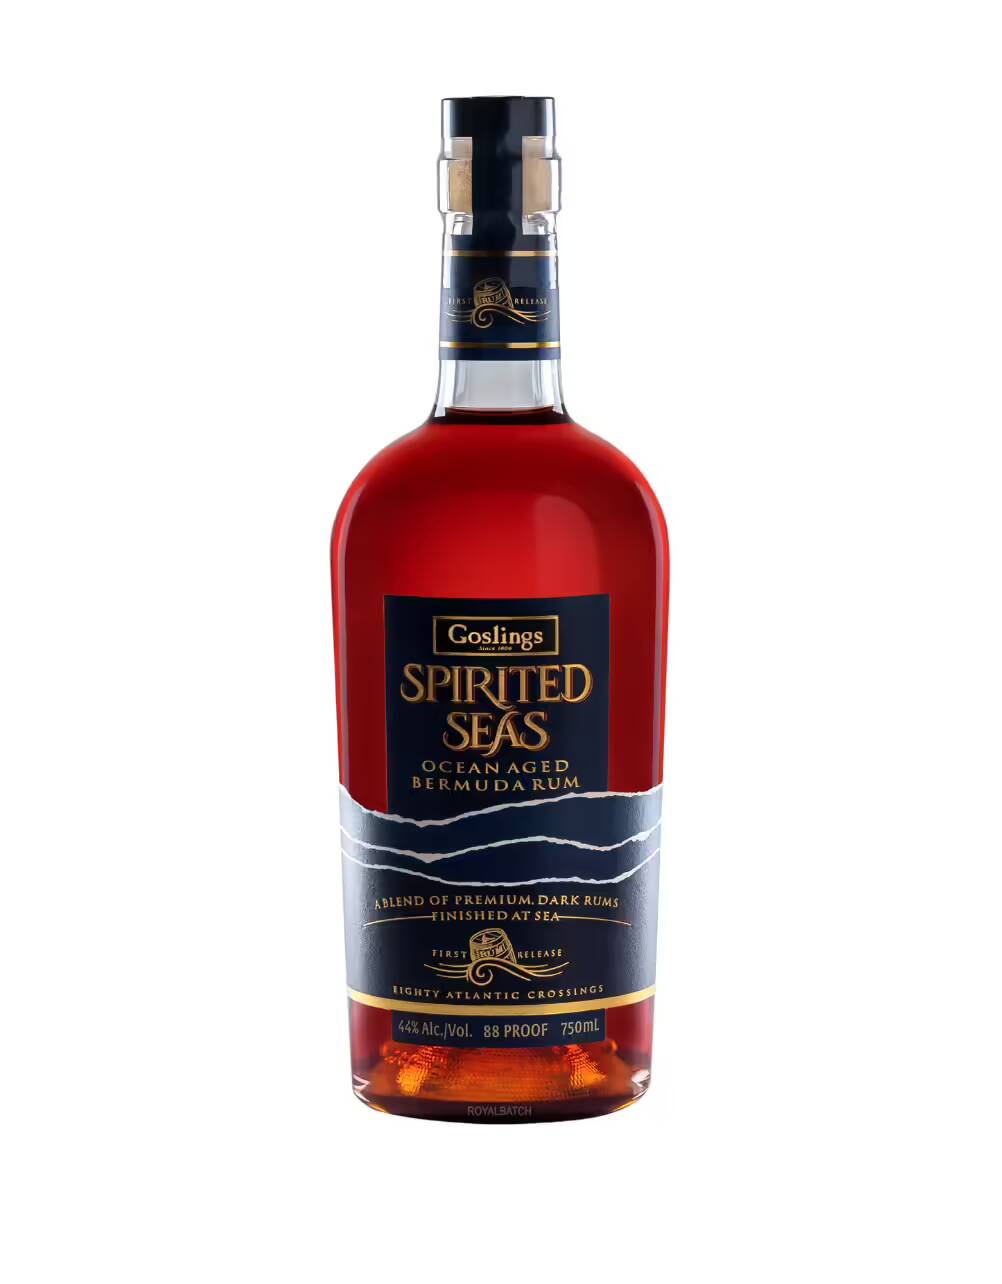 Goslings Spirited Seas Ocean Aged Bermuda Rum